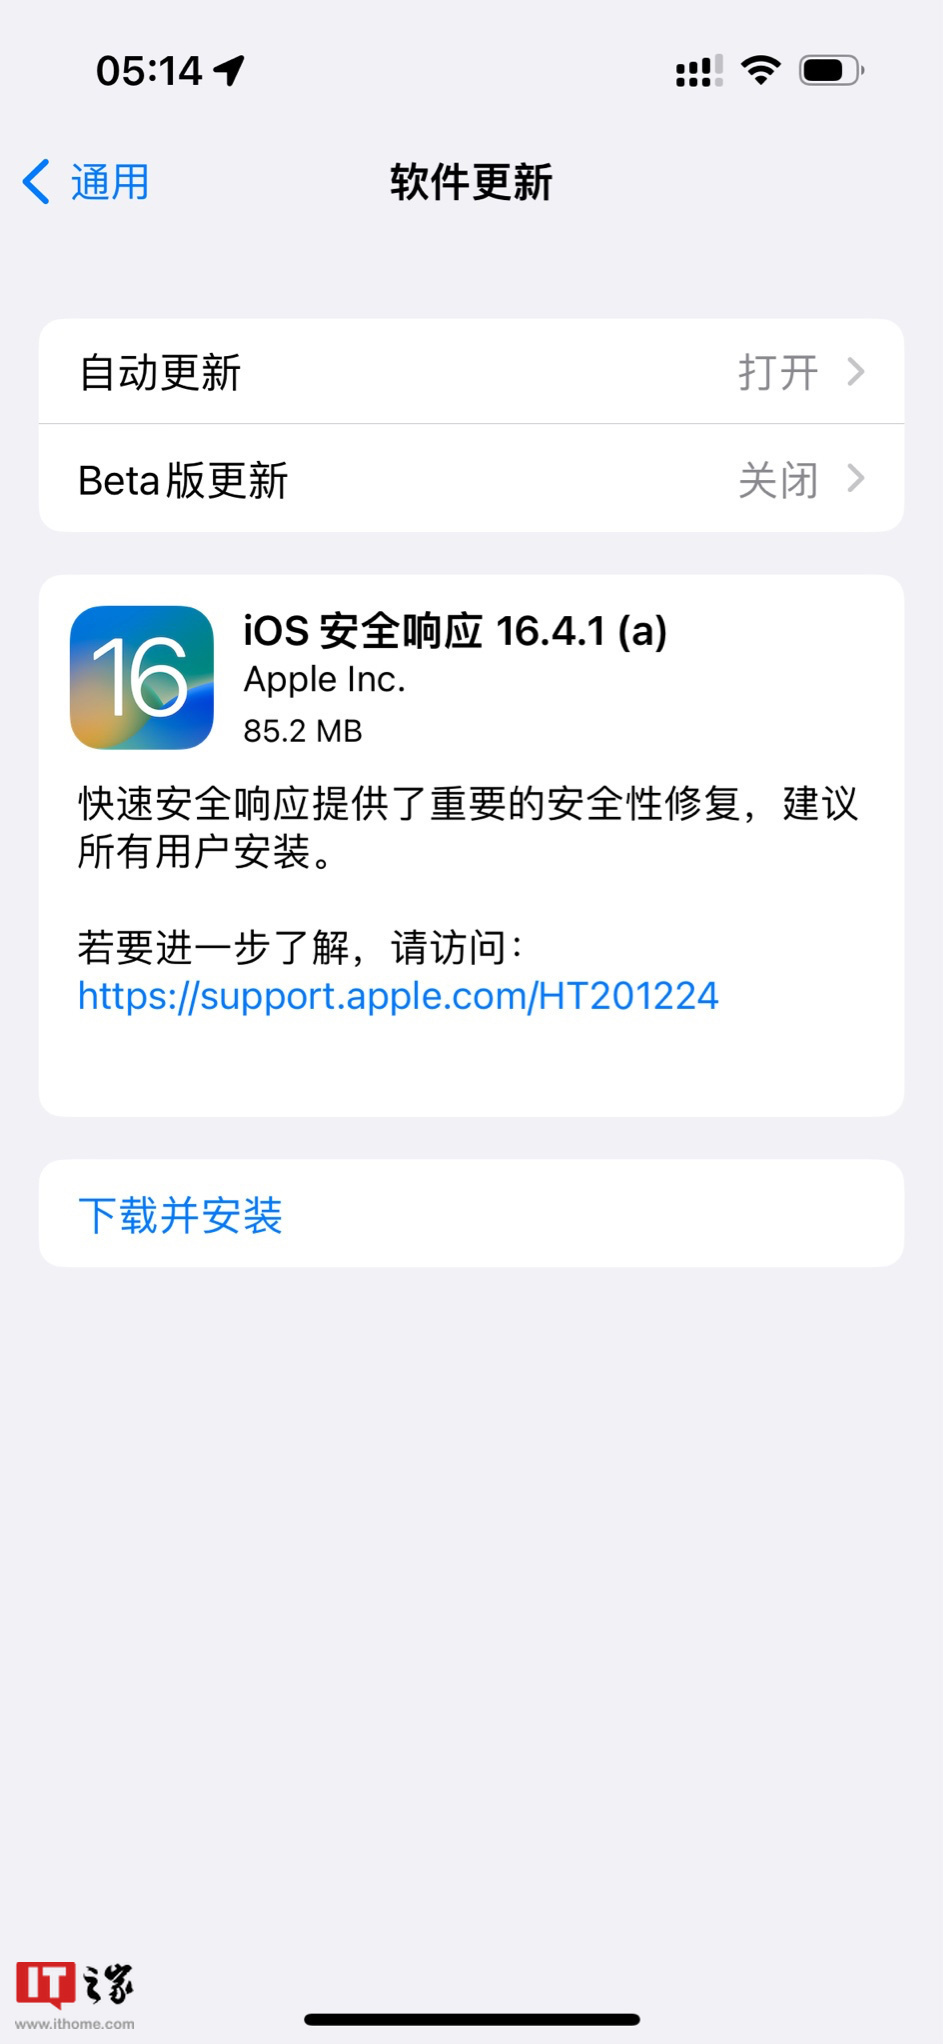 苹果发布iOS 16.4.1/macOS 13.3.1快速安全响应更新